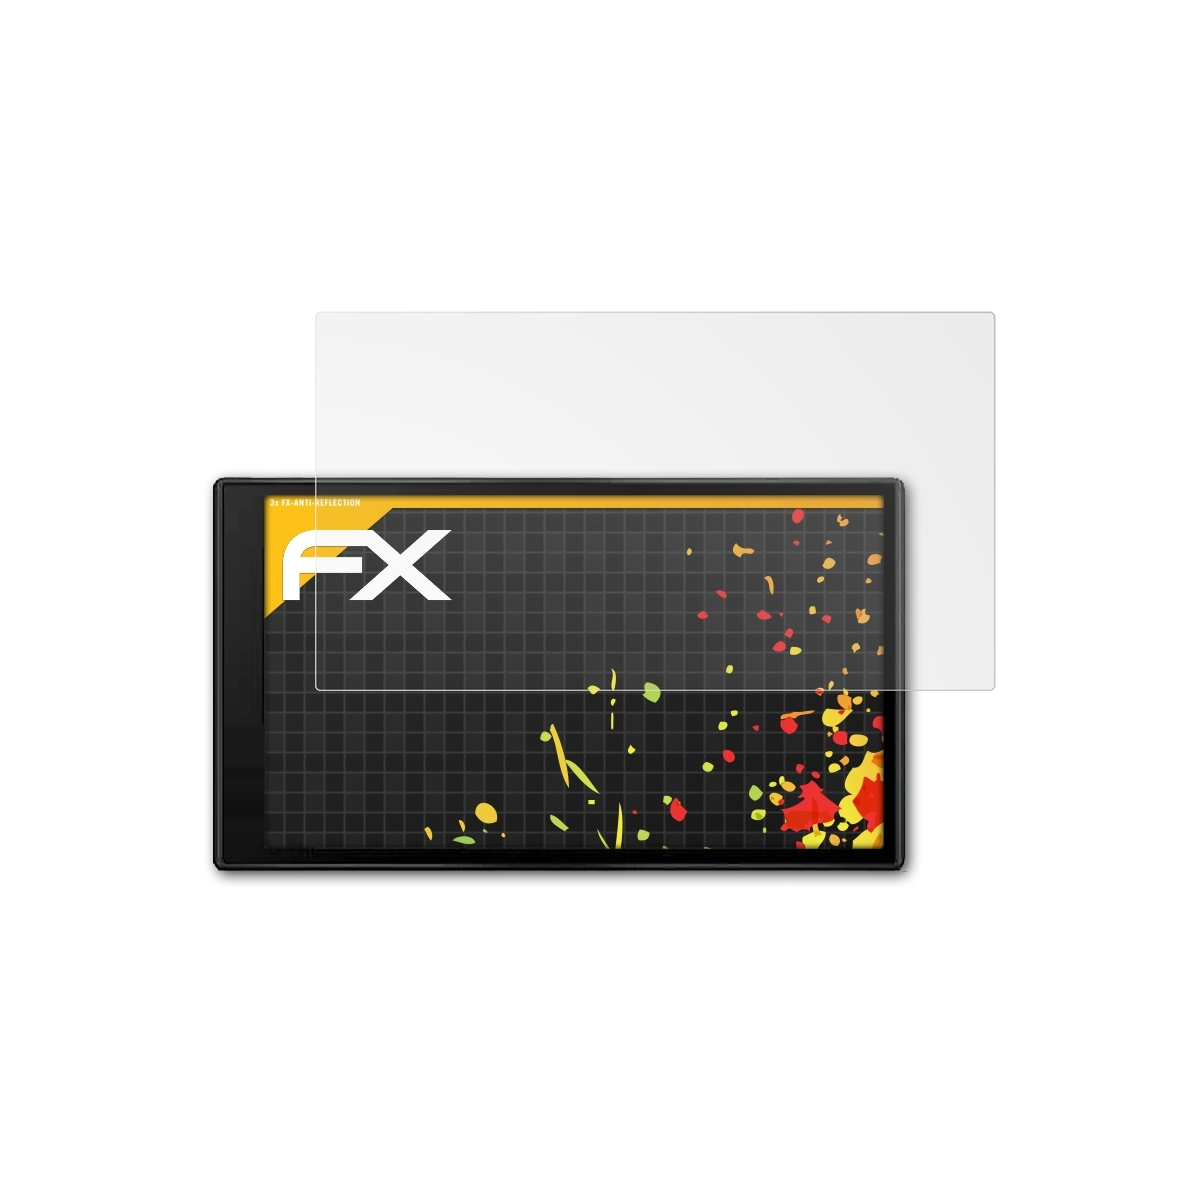 ATFOLIX 3x FX-Antireflex Displayschutz(für Garmin DriveSmart 66)